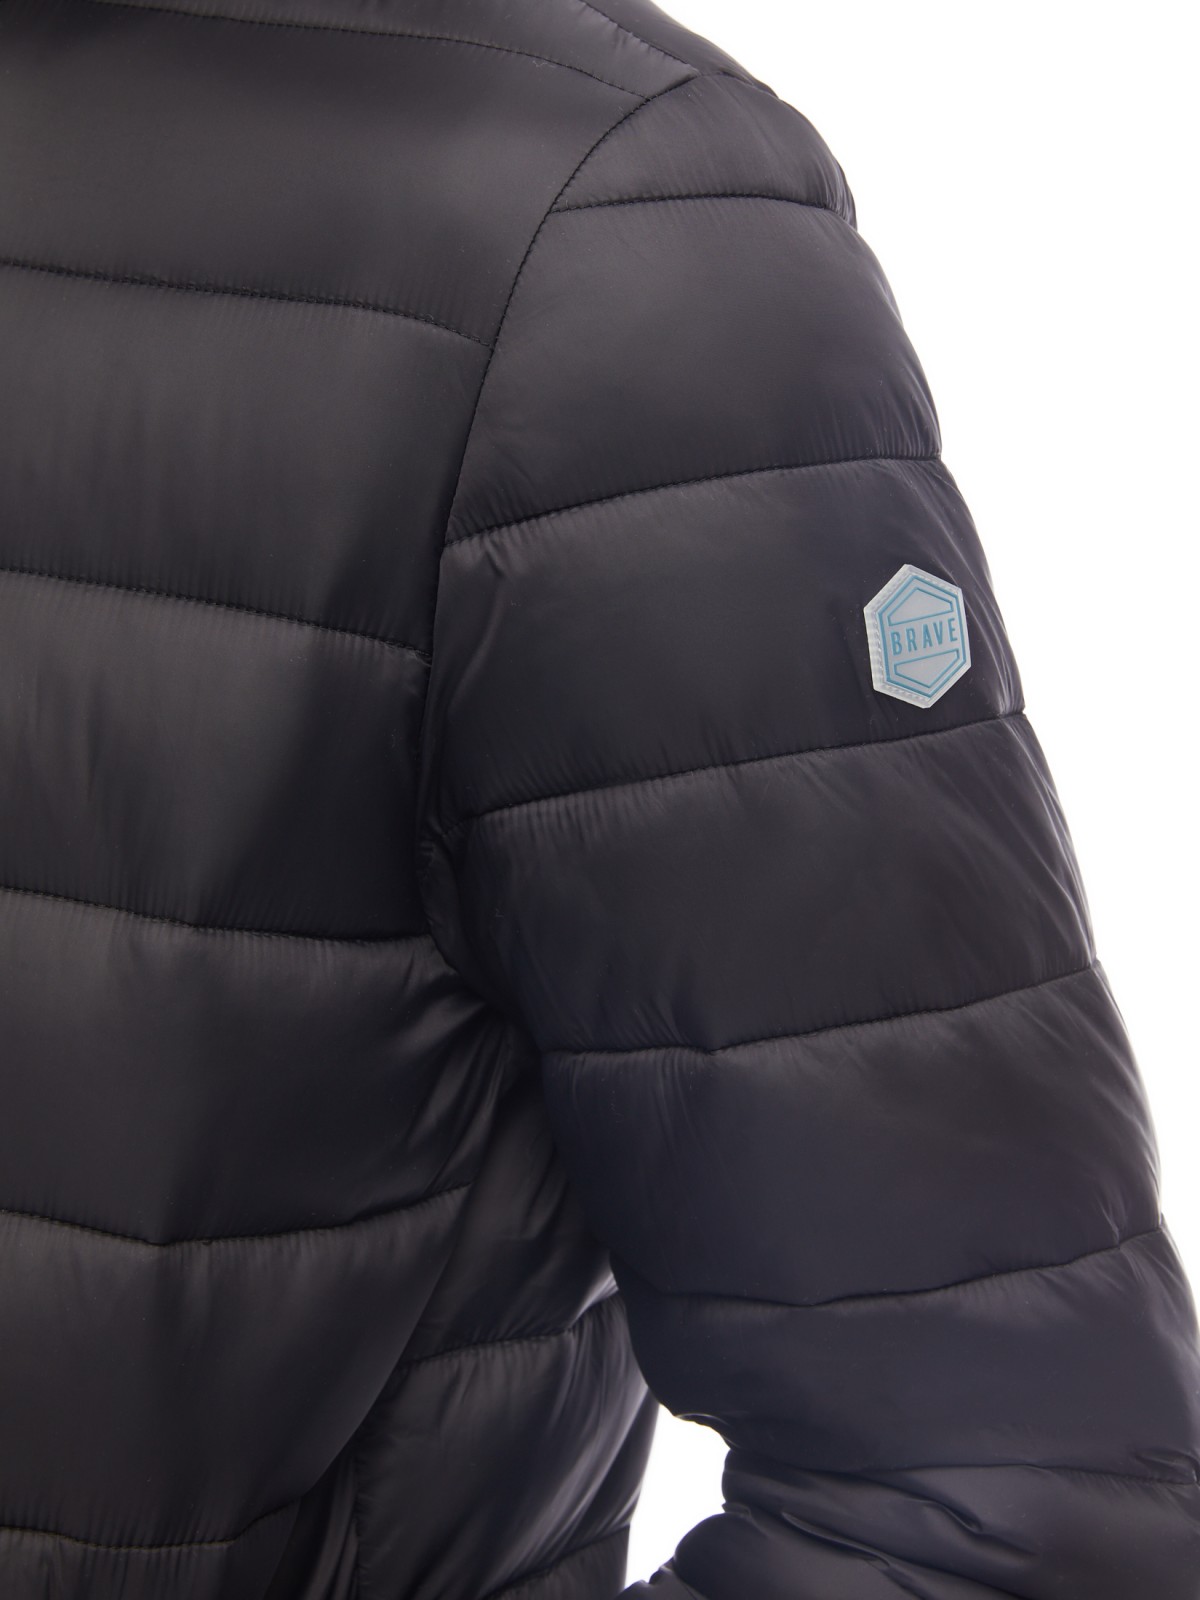 Лёгкая утеплённая куртка-бомбер с воротником-стойкой zolla 014125102094, цвет черный, размер S - фото 5